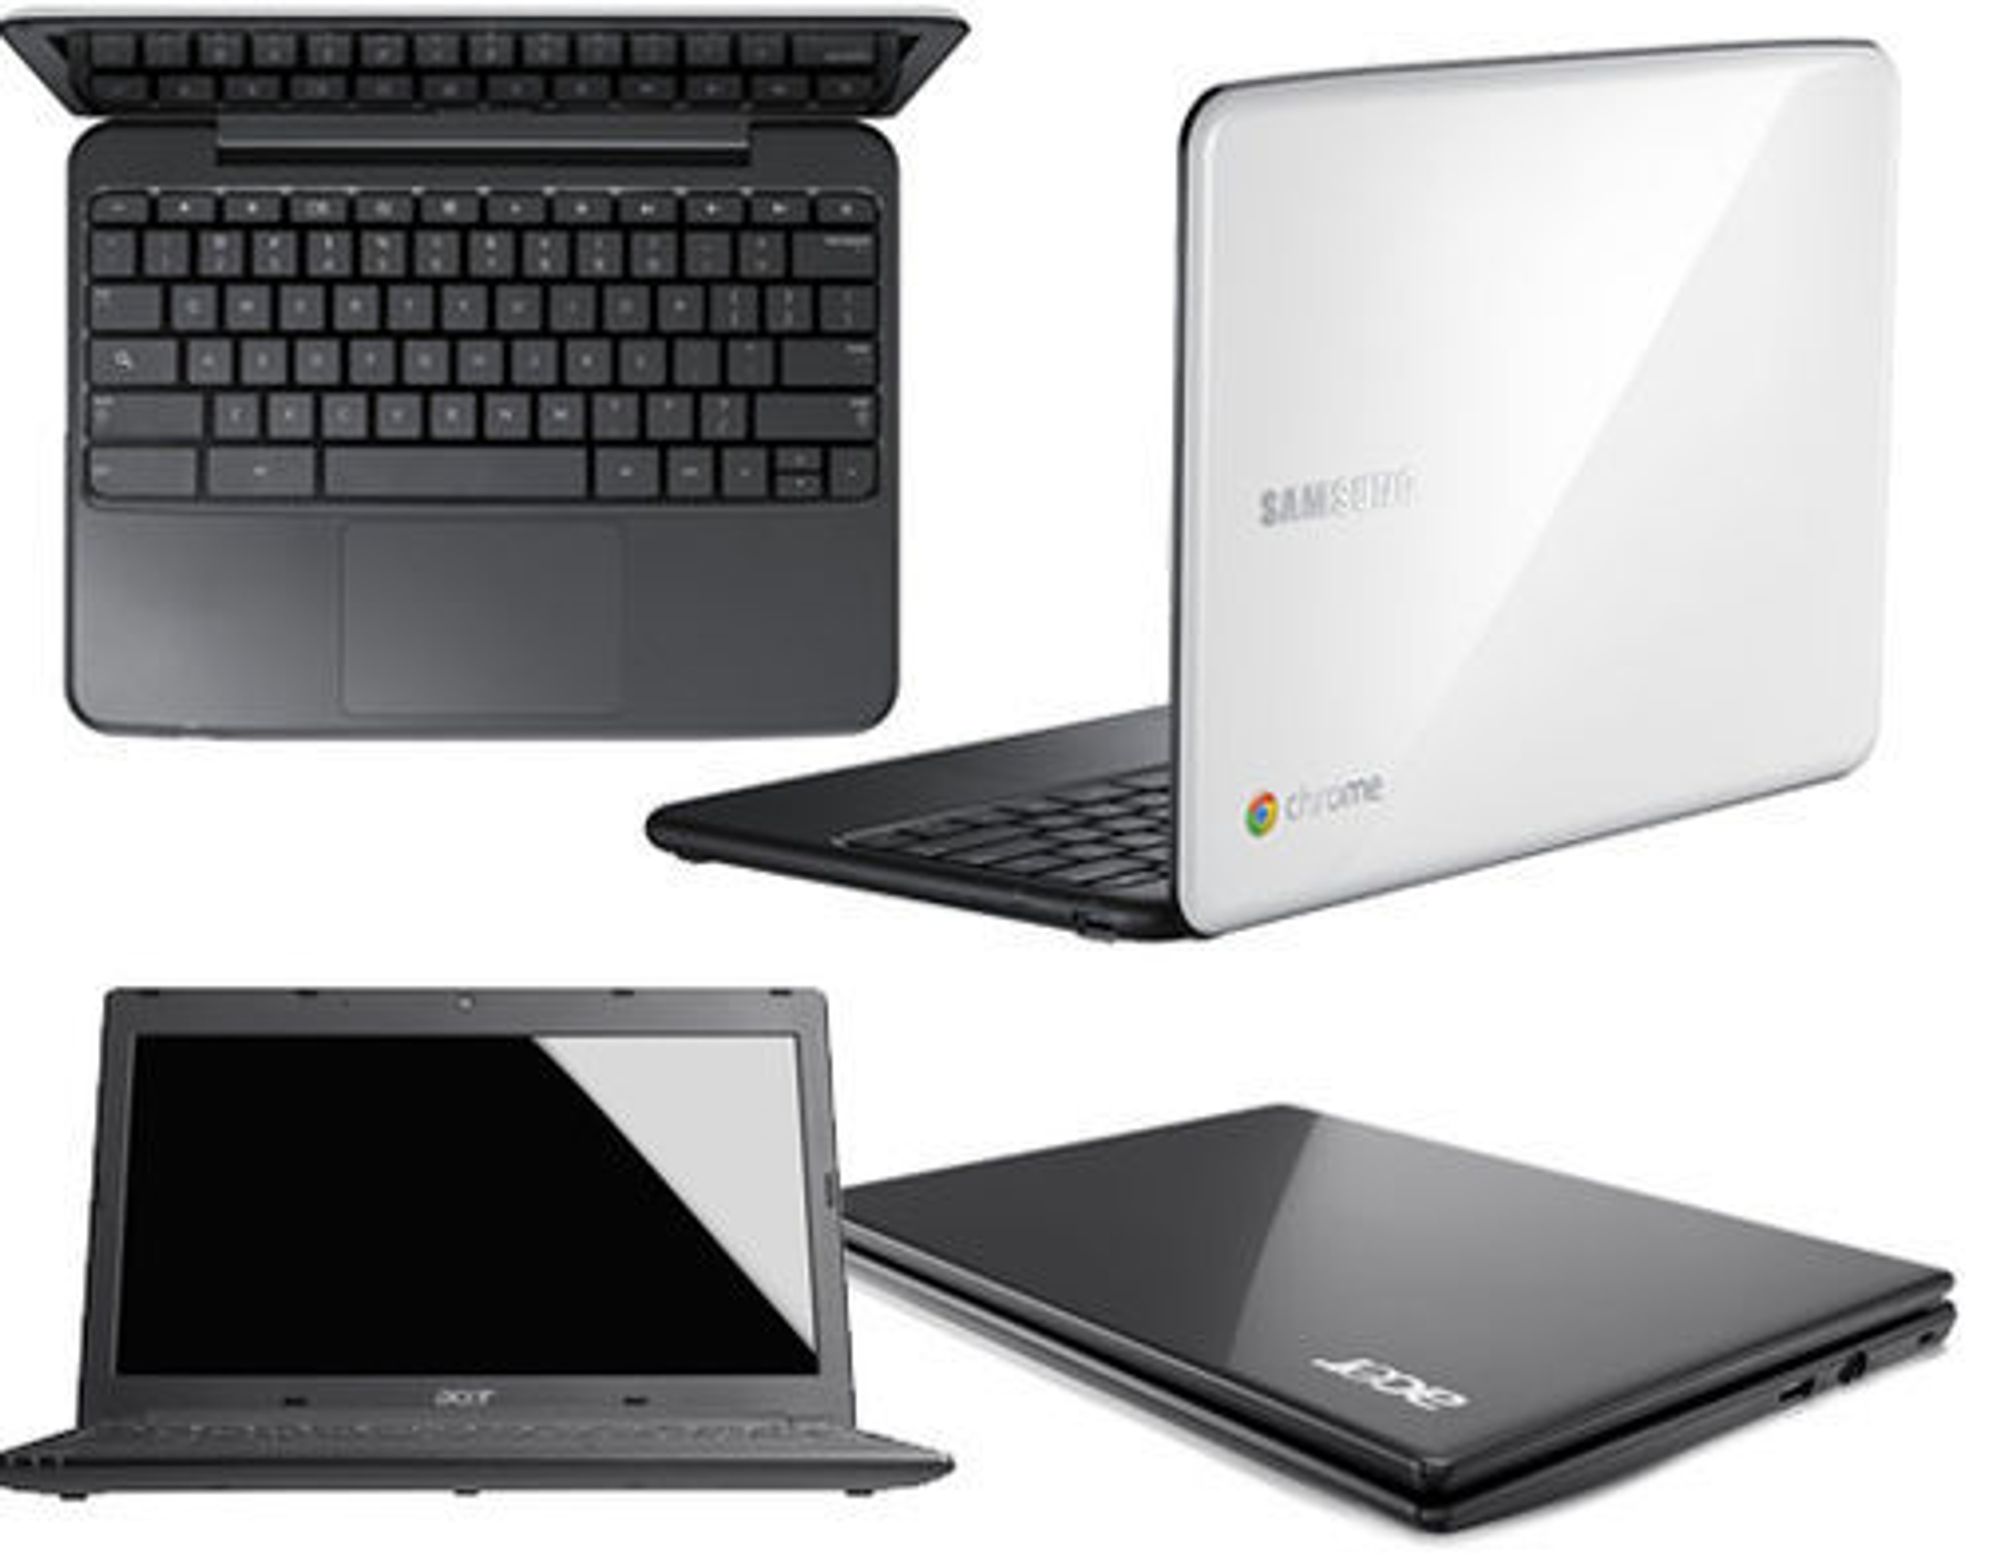 Chromebook fra Samsung (øverst) tilbys i to ulike farger. Modellen fra Acer under har litt mindre skjerm og en lavere pris.